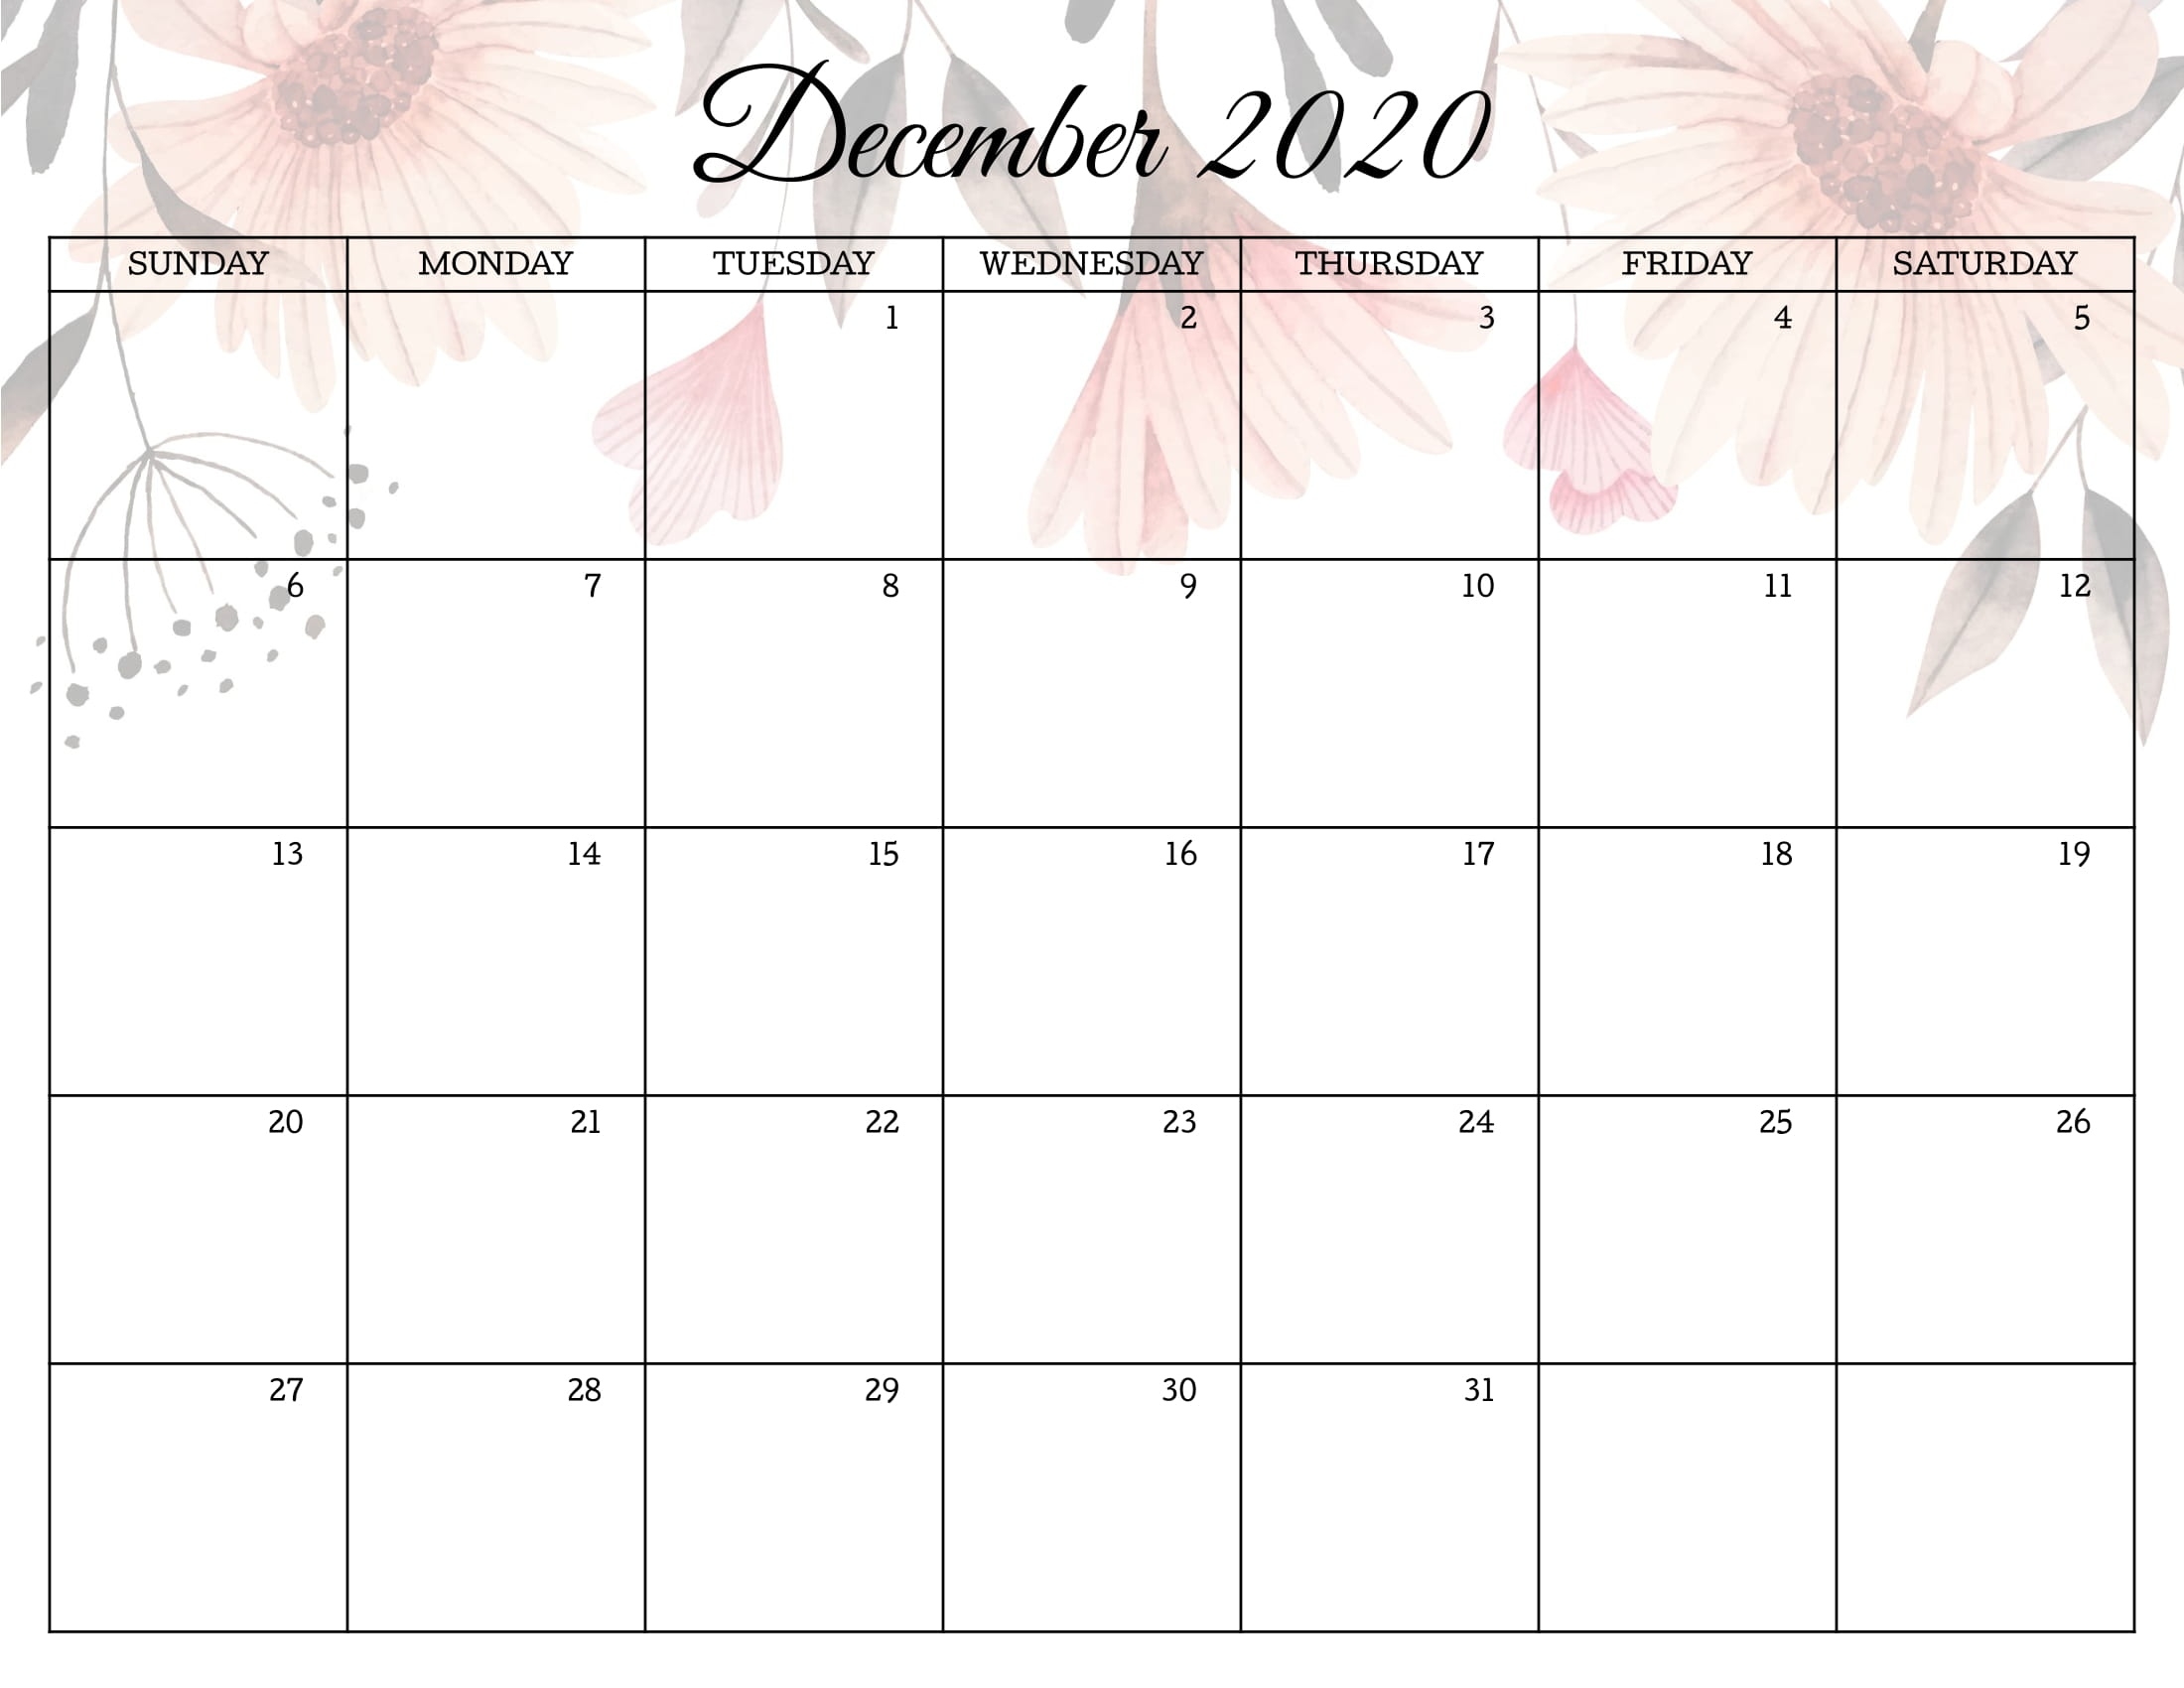 Floral December 2020 Calendar Templates - Printable 2020 Calendars Floral December 2020 Calendar December 2020 Through March 2021 Calendar